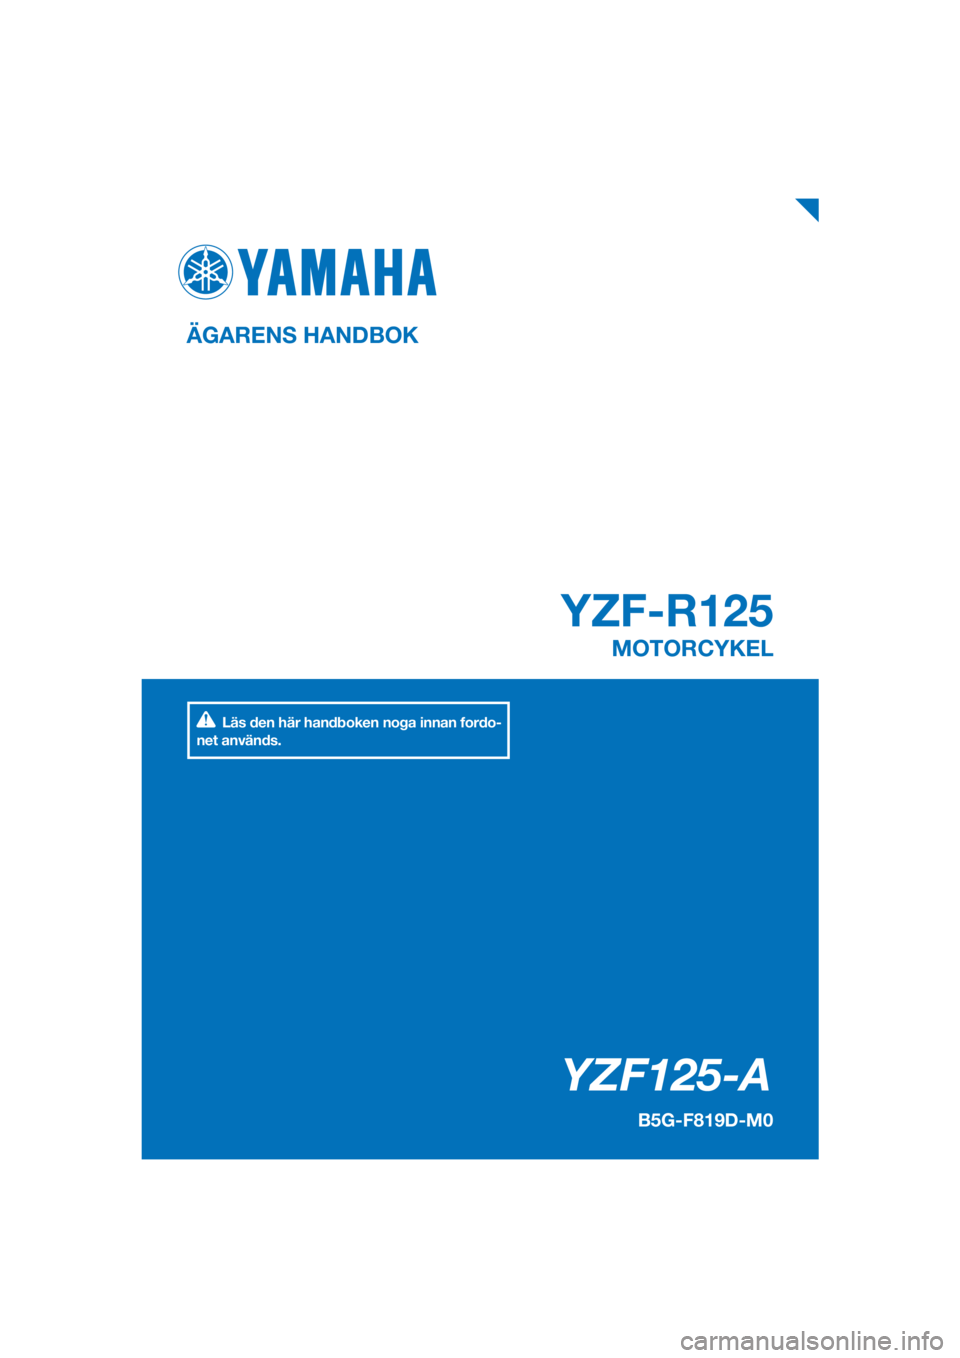 YAMAHA YZF-R125 2019  Bruksanvisningar (in Swedish) PANTONE285C
YZF125-A
YZF-R125
ÄGARENS HANDBOK
B5G-F819D-M0
MOTORCYKEL
[Swedish  (M)]
Läs den här handboken noga innan fordo-
net används. 